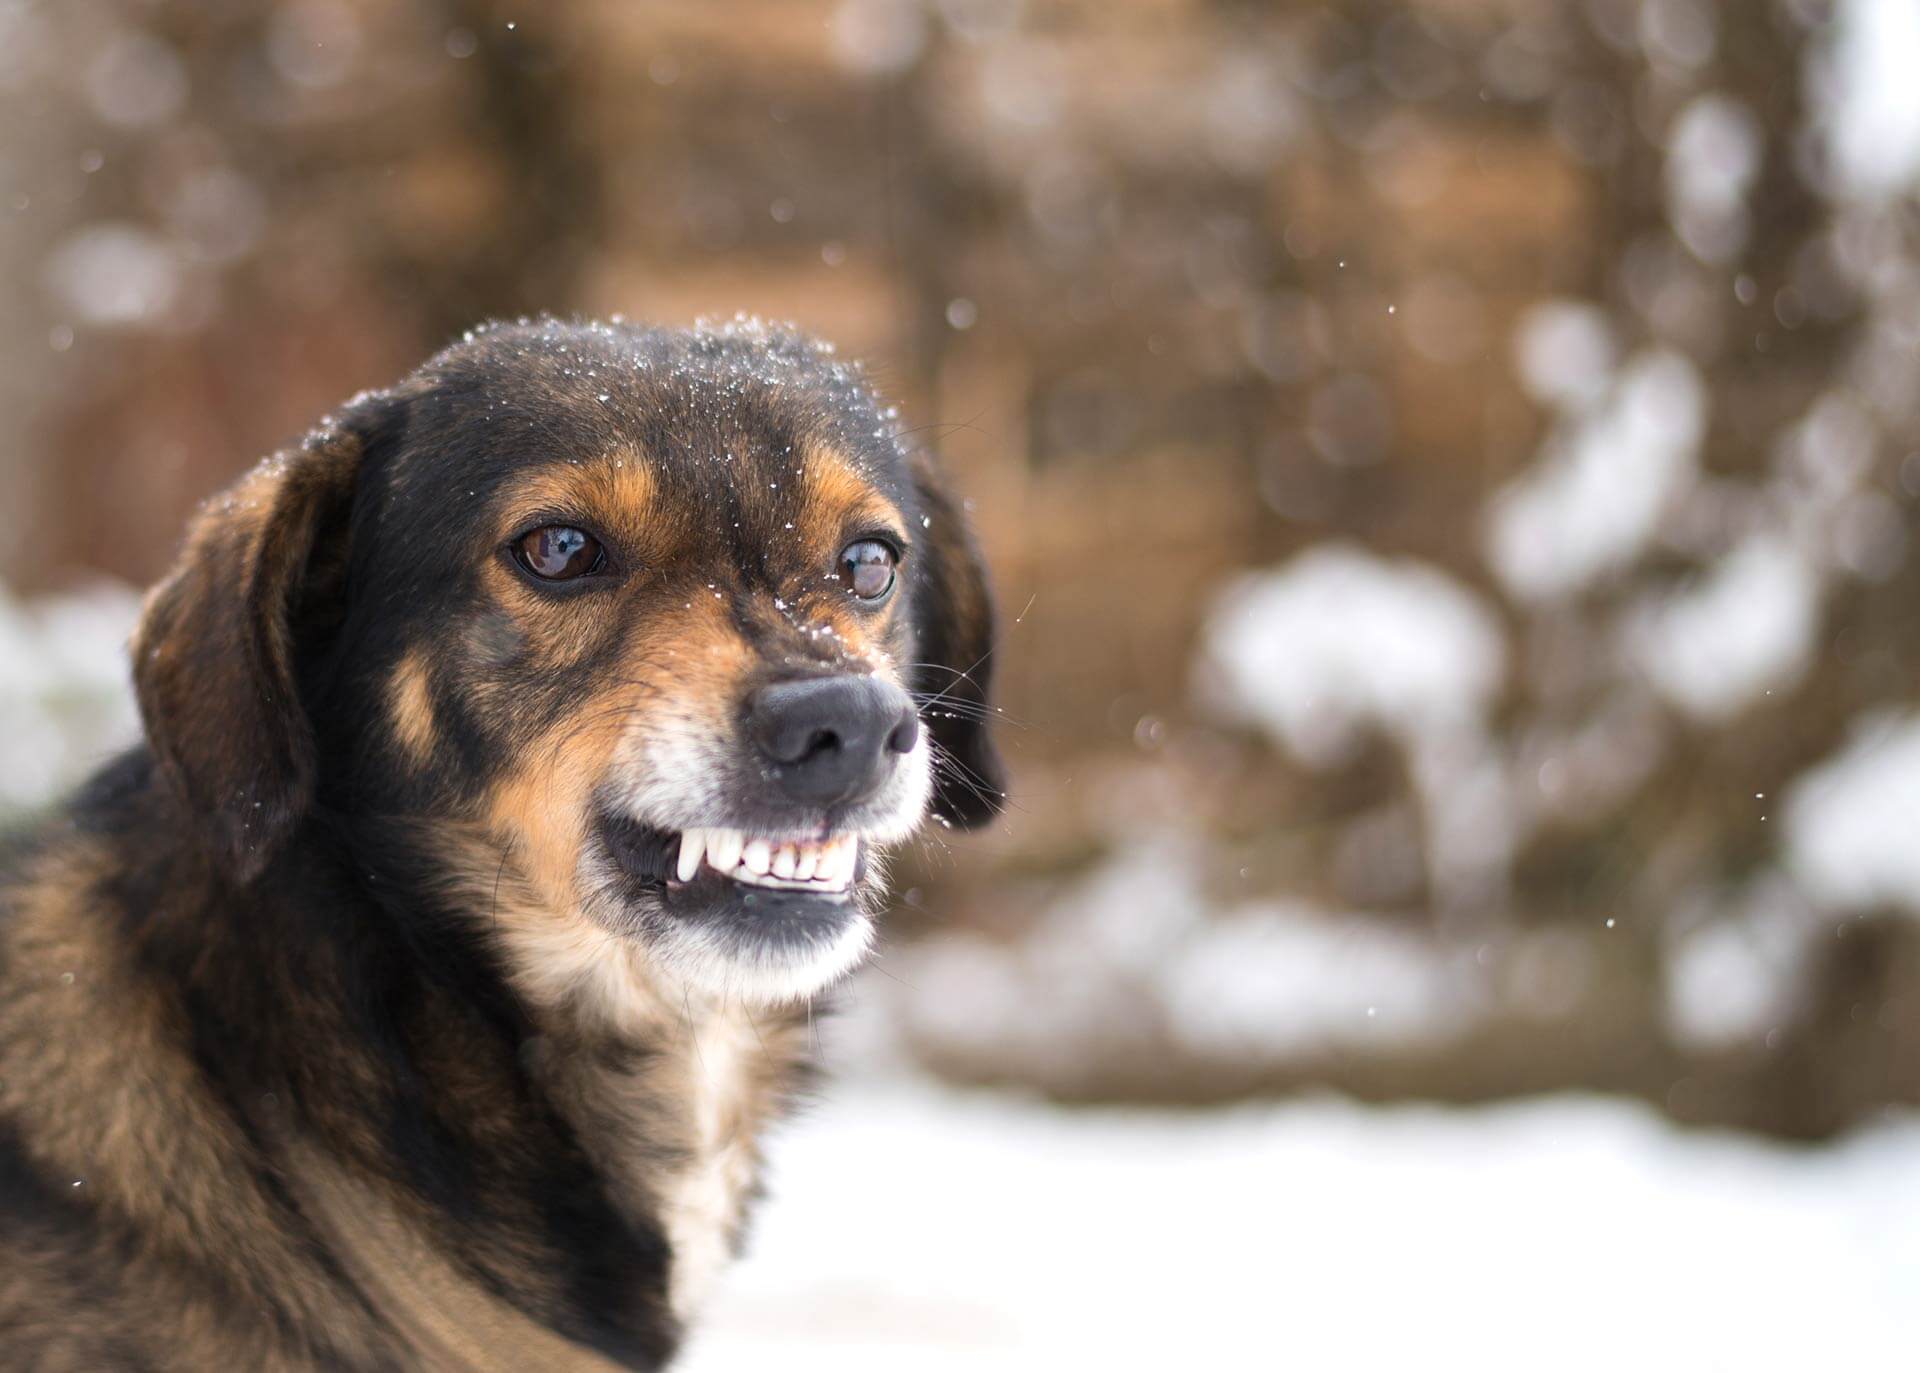 Hund aggressiv gegen Menschen - das hilft wirklich